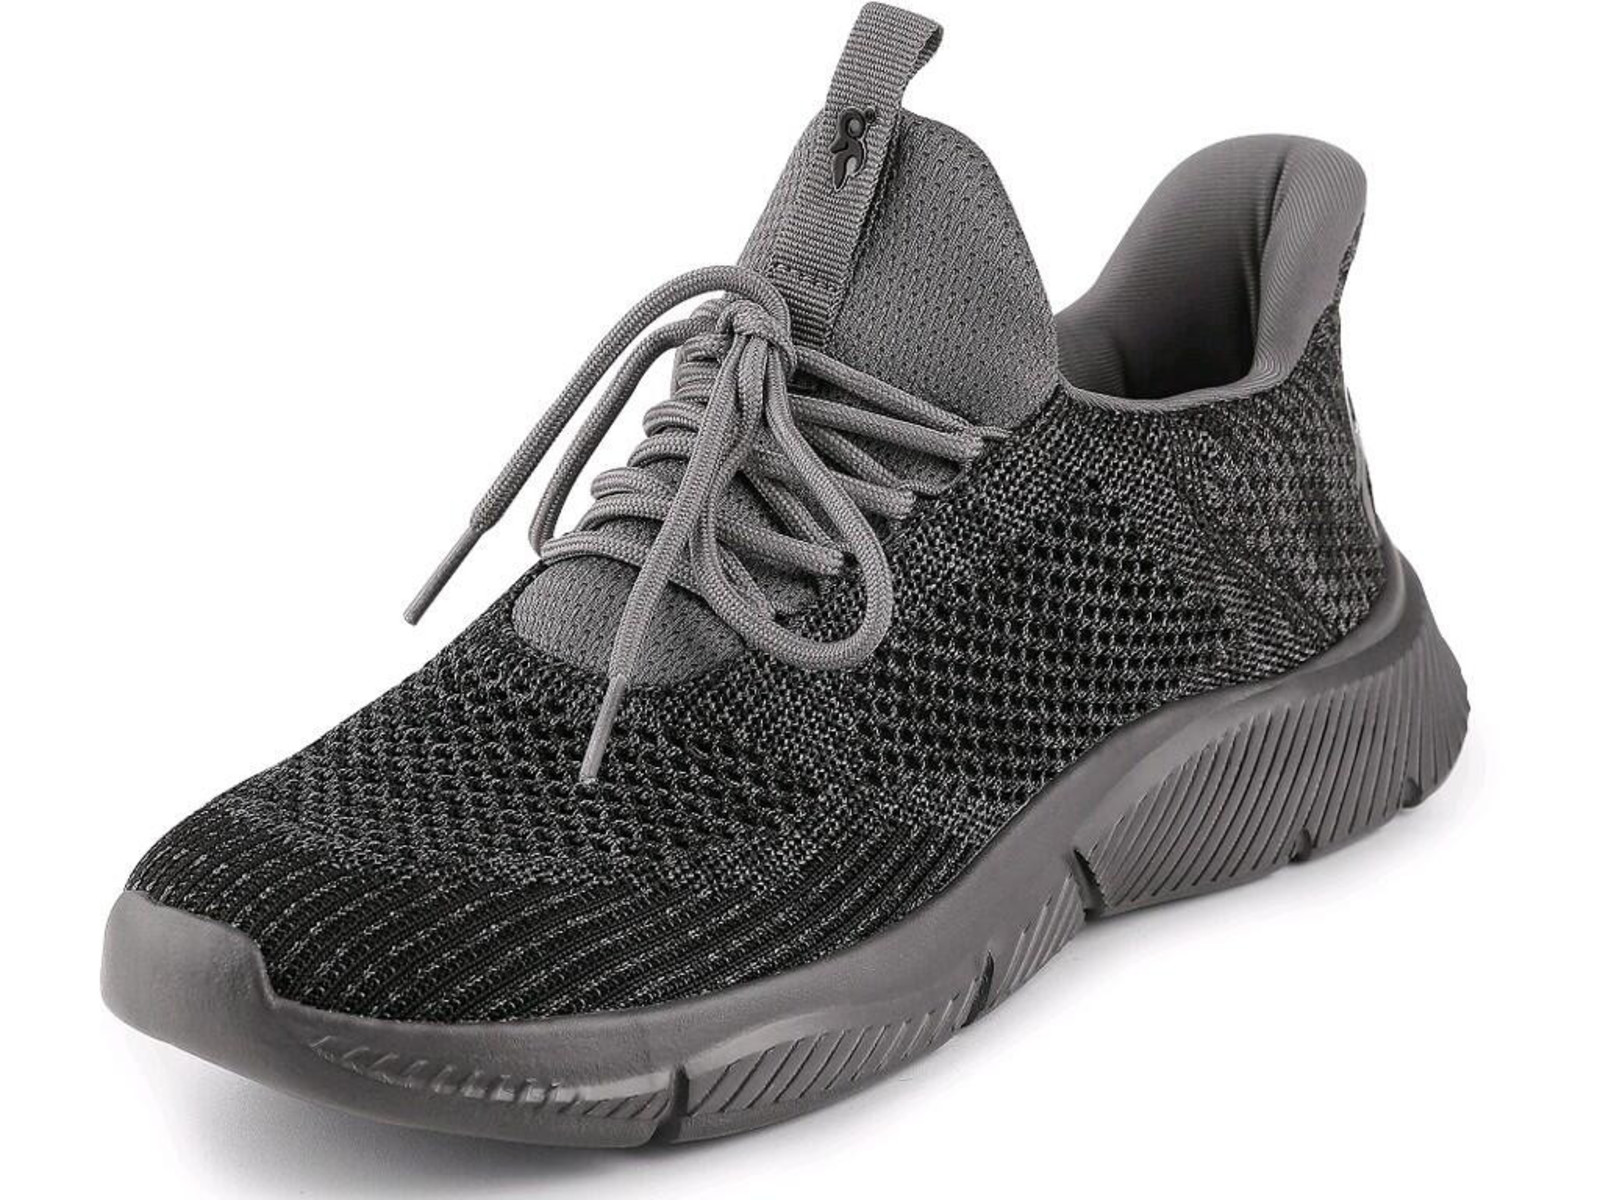 Voľnočasová obuv CXS Island Barbados - veľkosť: 41, farba: sivá/čierna